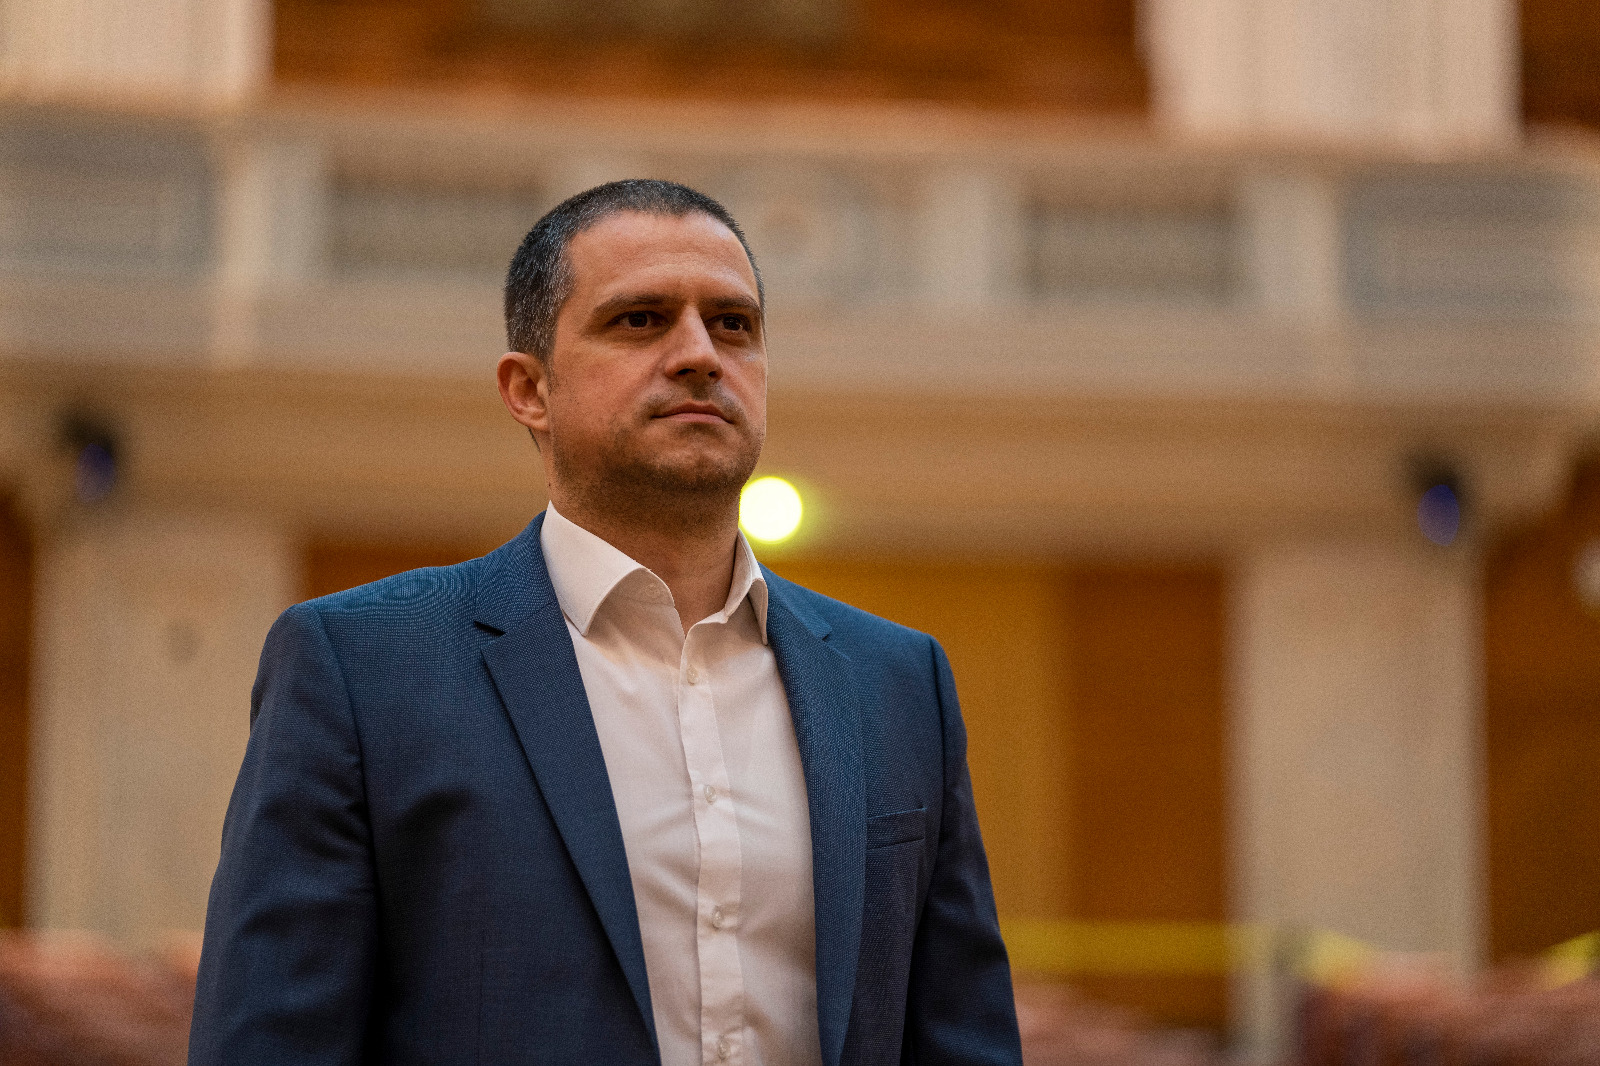 Deputatul PSD Bogdan Trif a rămas fără permis pentru 90 de zile după ce a fost depistat cu o alcoolemie de 0,05. ”Era în marja de eroare a acelui tip de aparat”